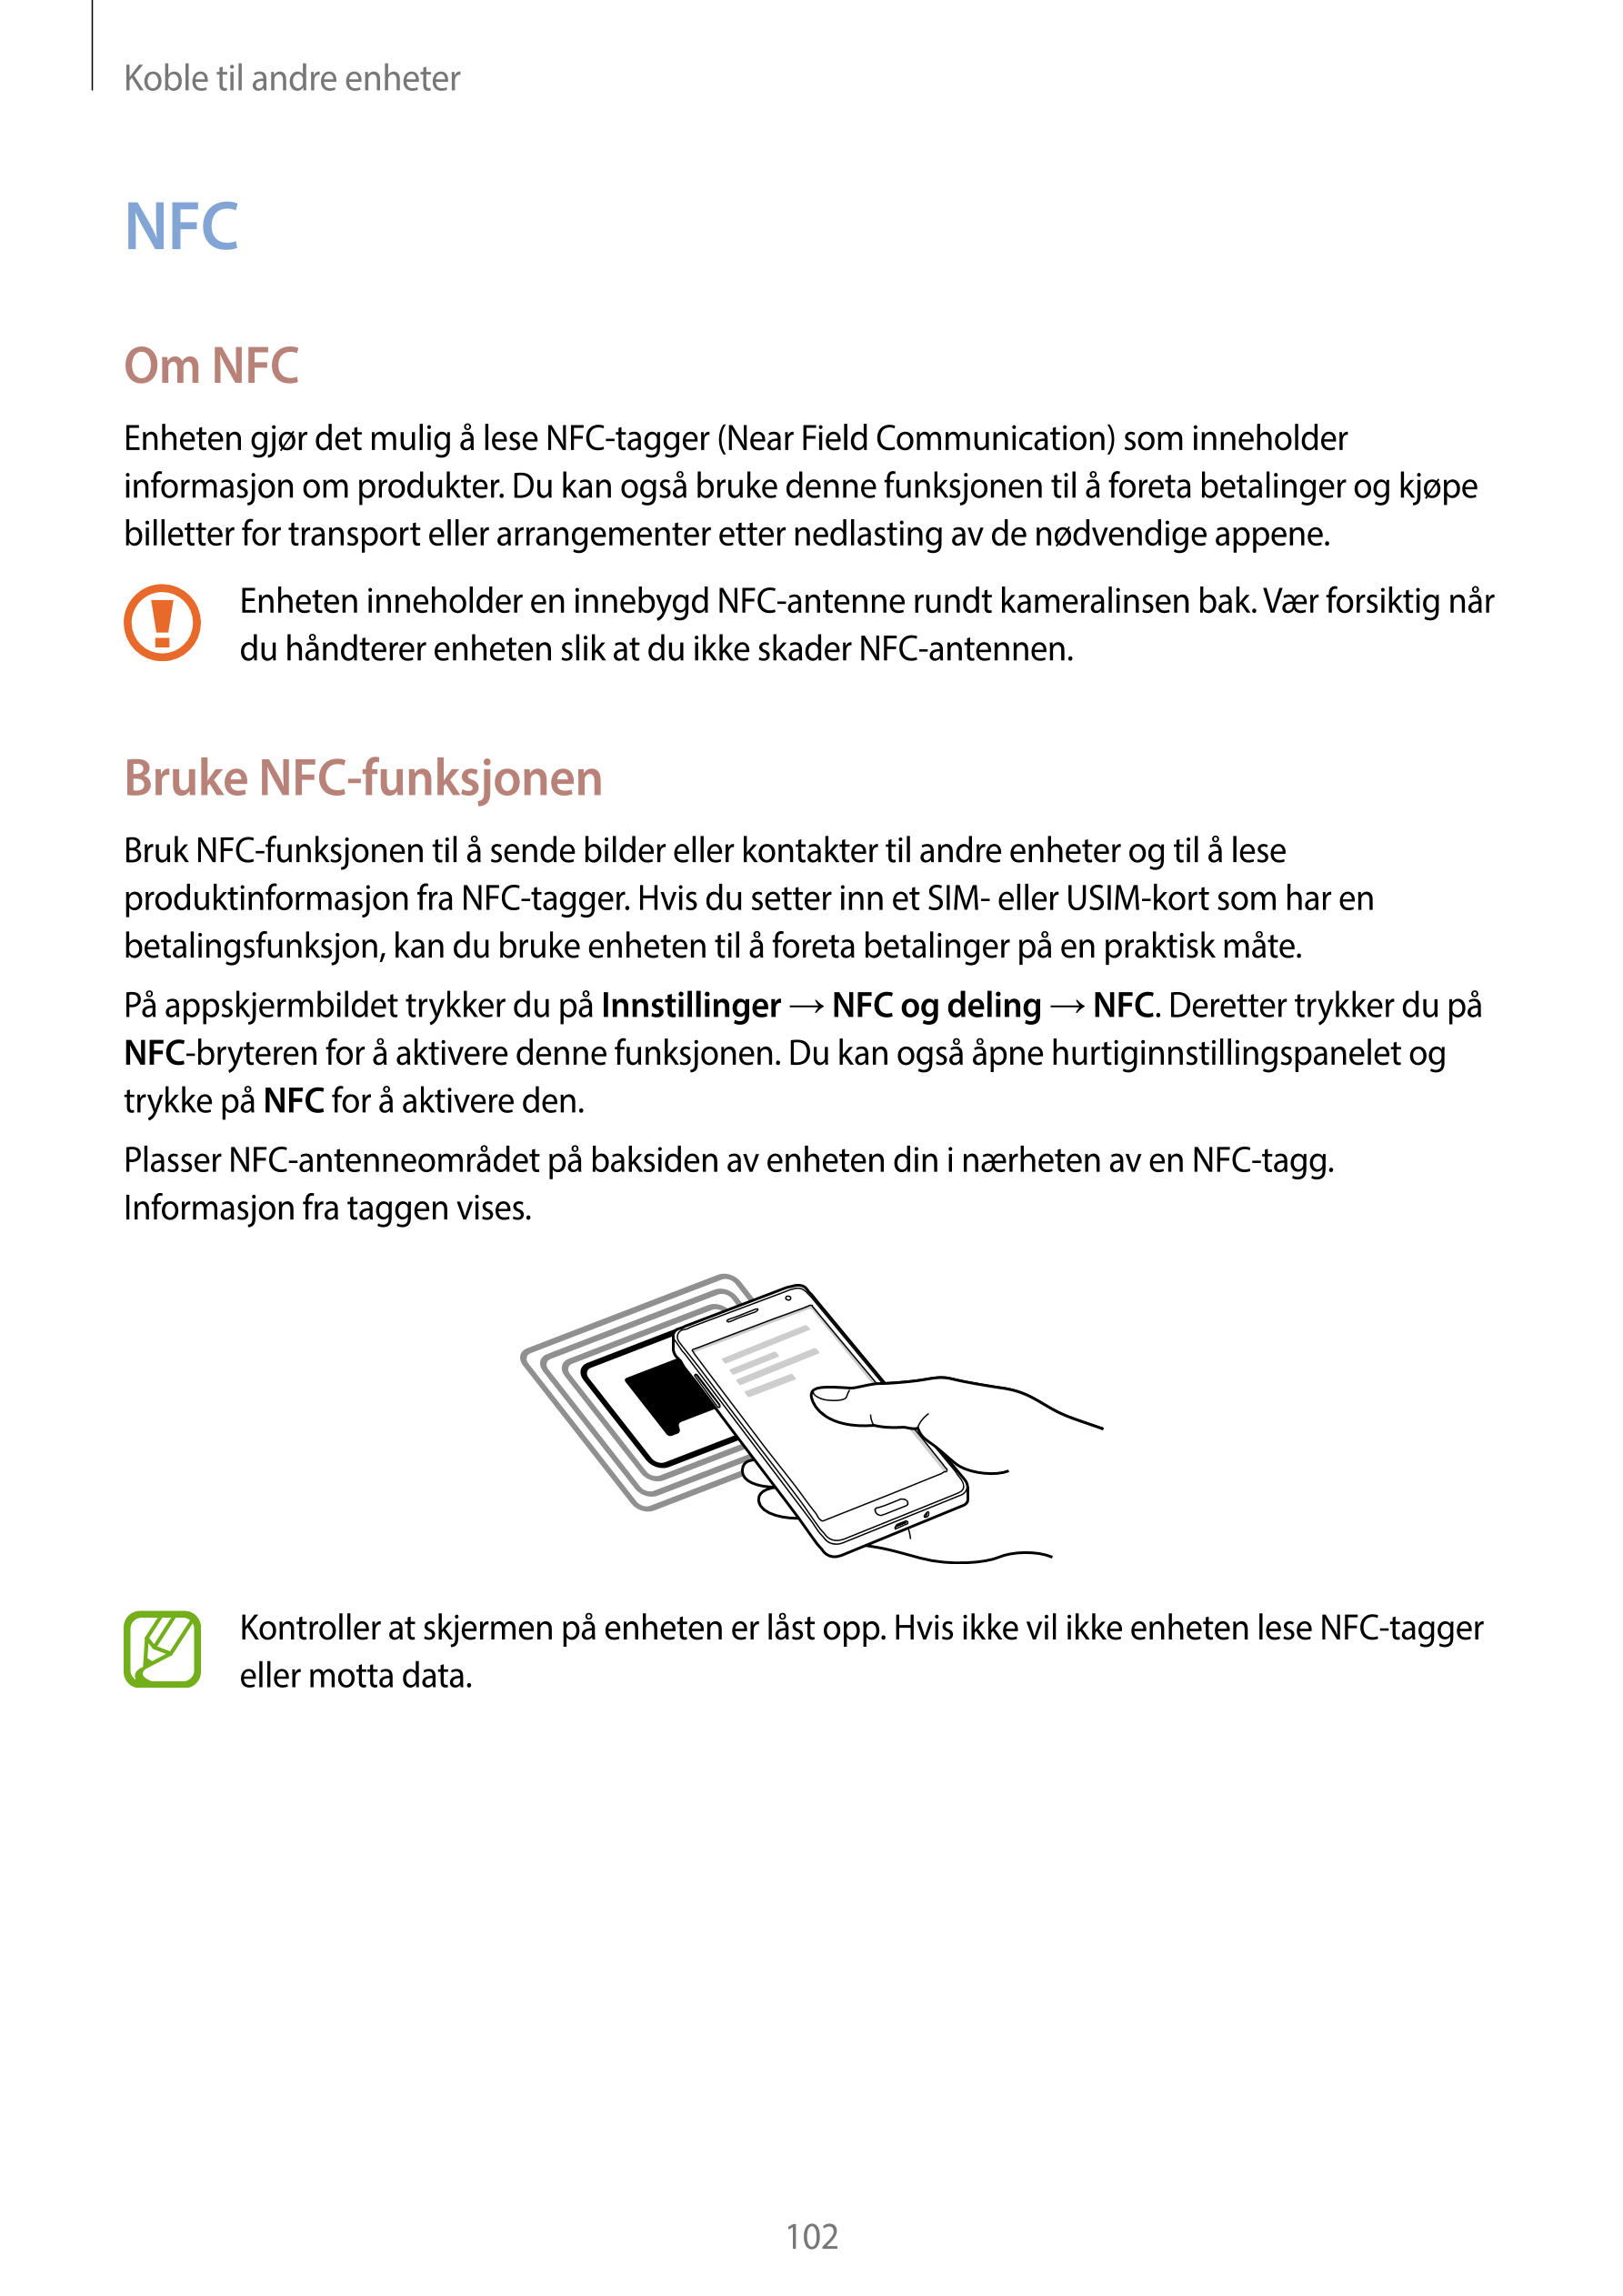 Koble til andre enheter
NFC
Om NFC
Enheten gjør det mulig å lese NFC-tagger (Near Field Communication) som inneholder 
informasj